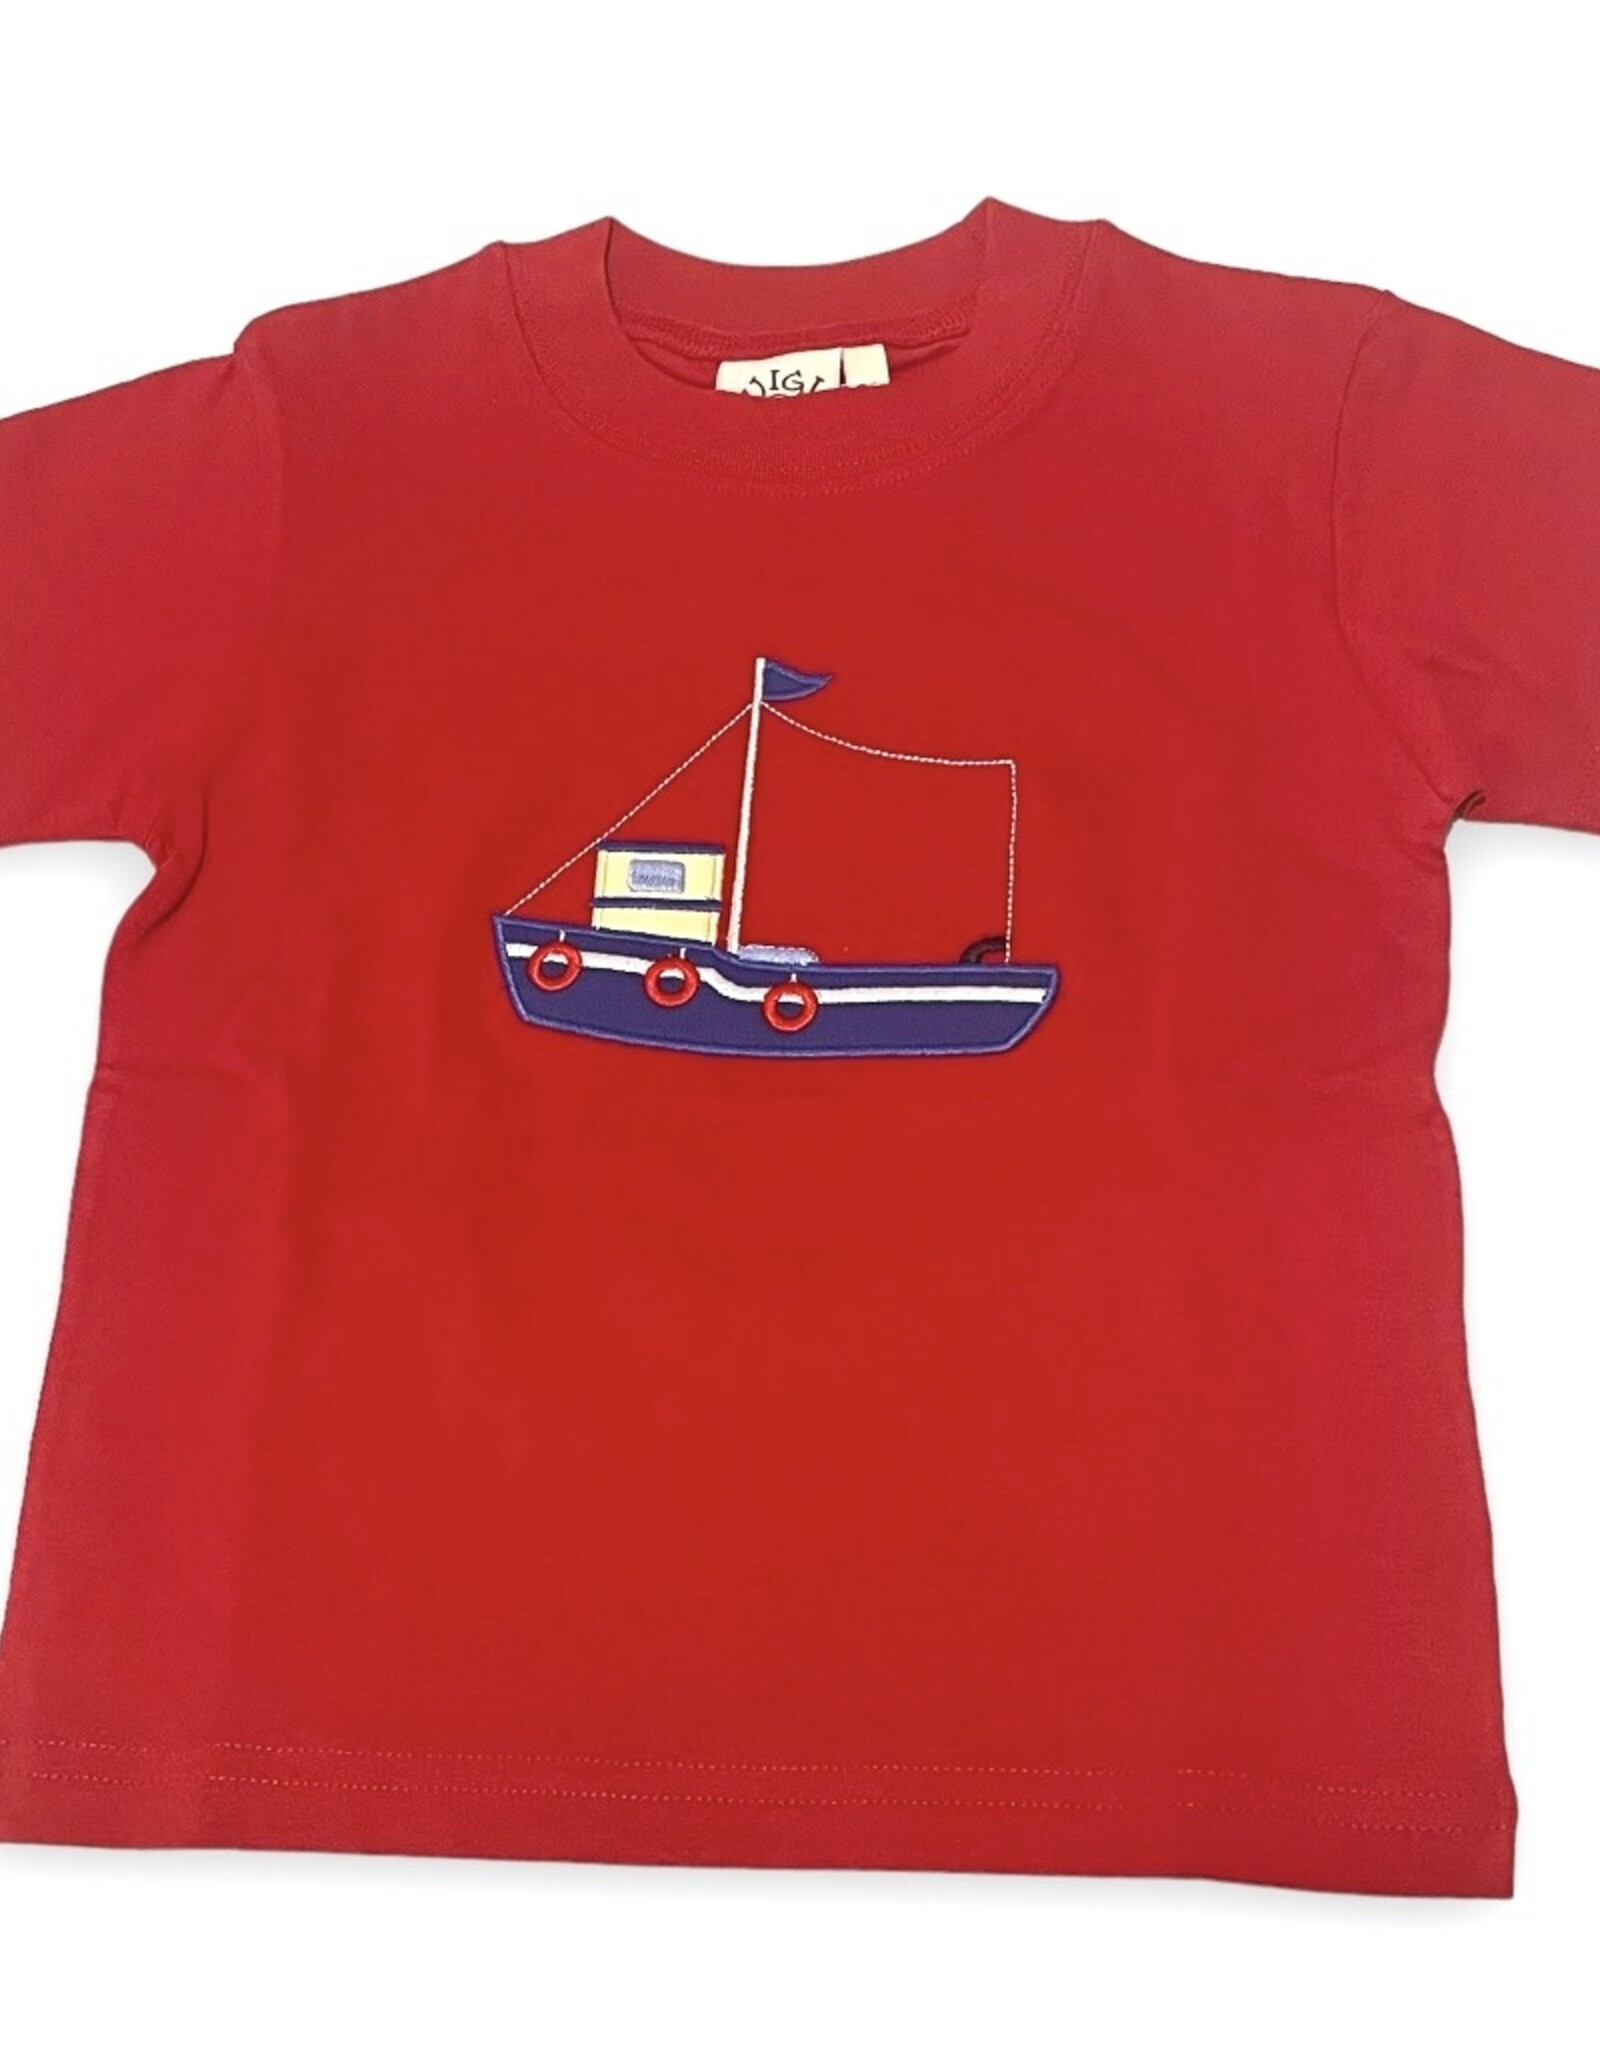 Luigi Kids Boys S/S t-shirt Fishing Boat